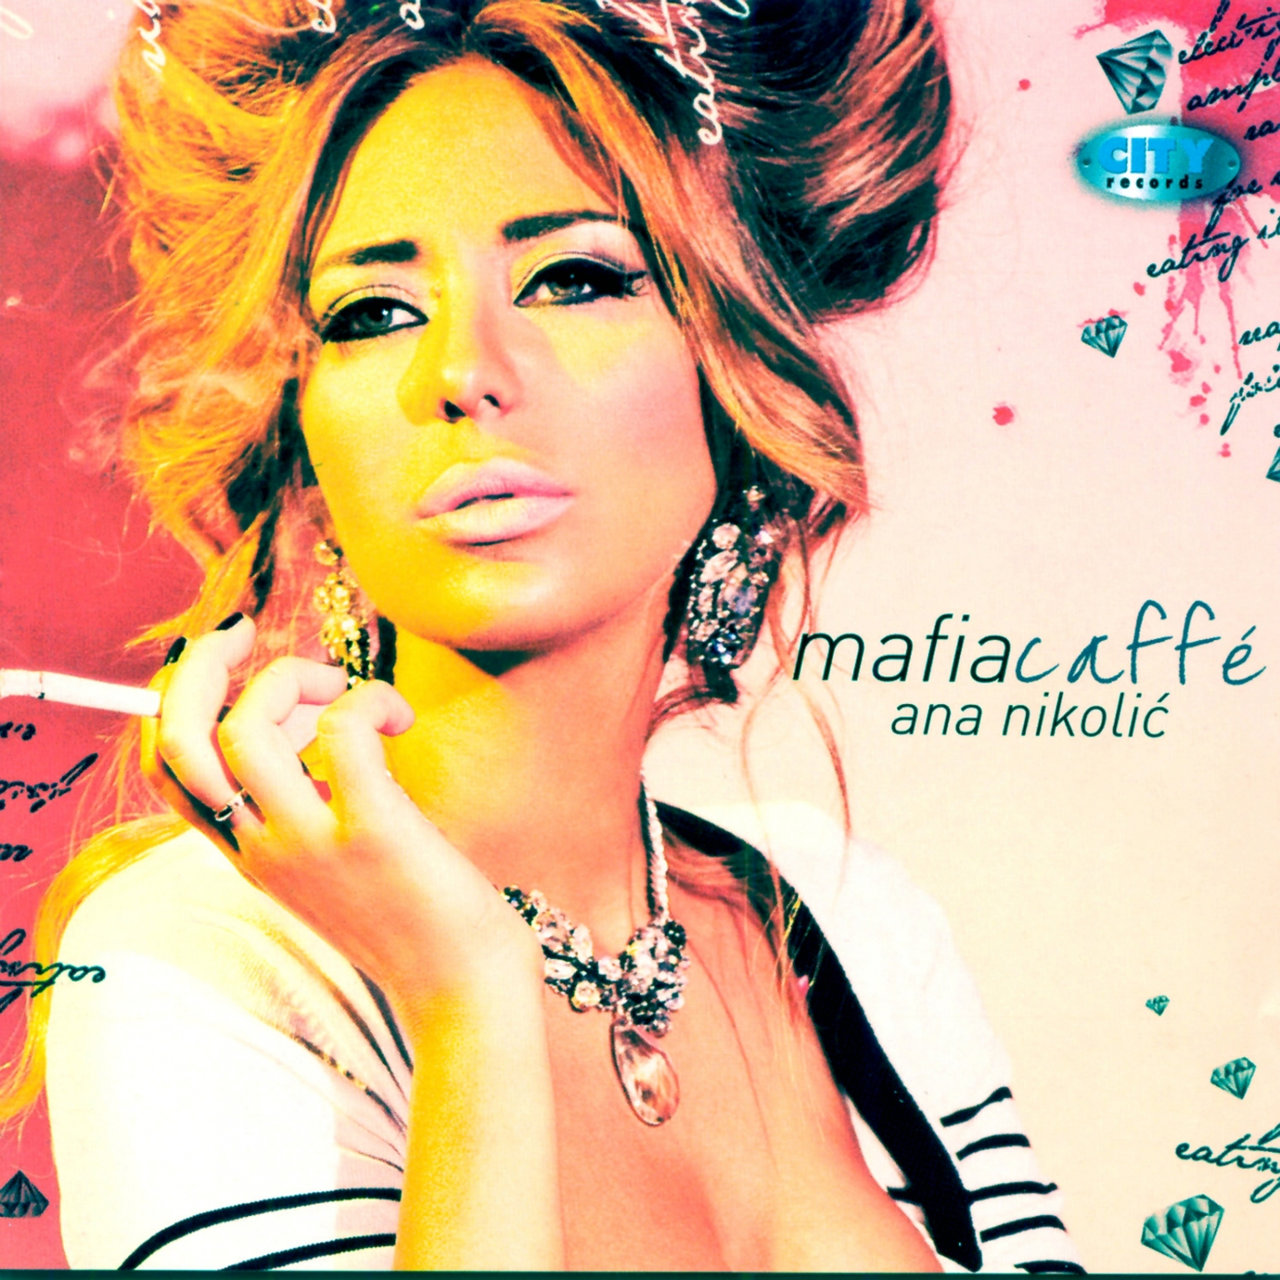 Ana Nikolić Mafia Caffé cover artwork